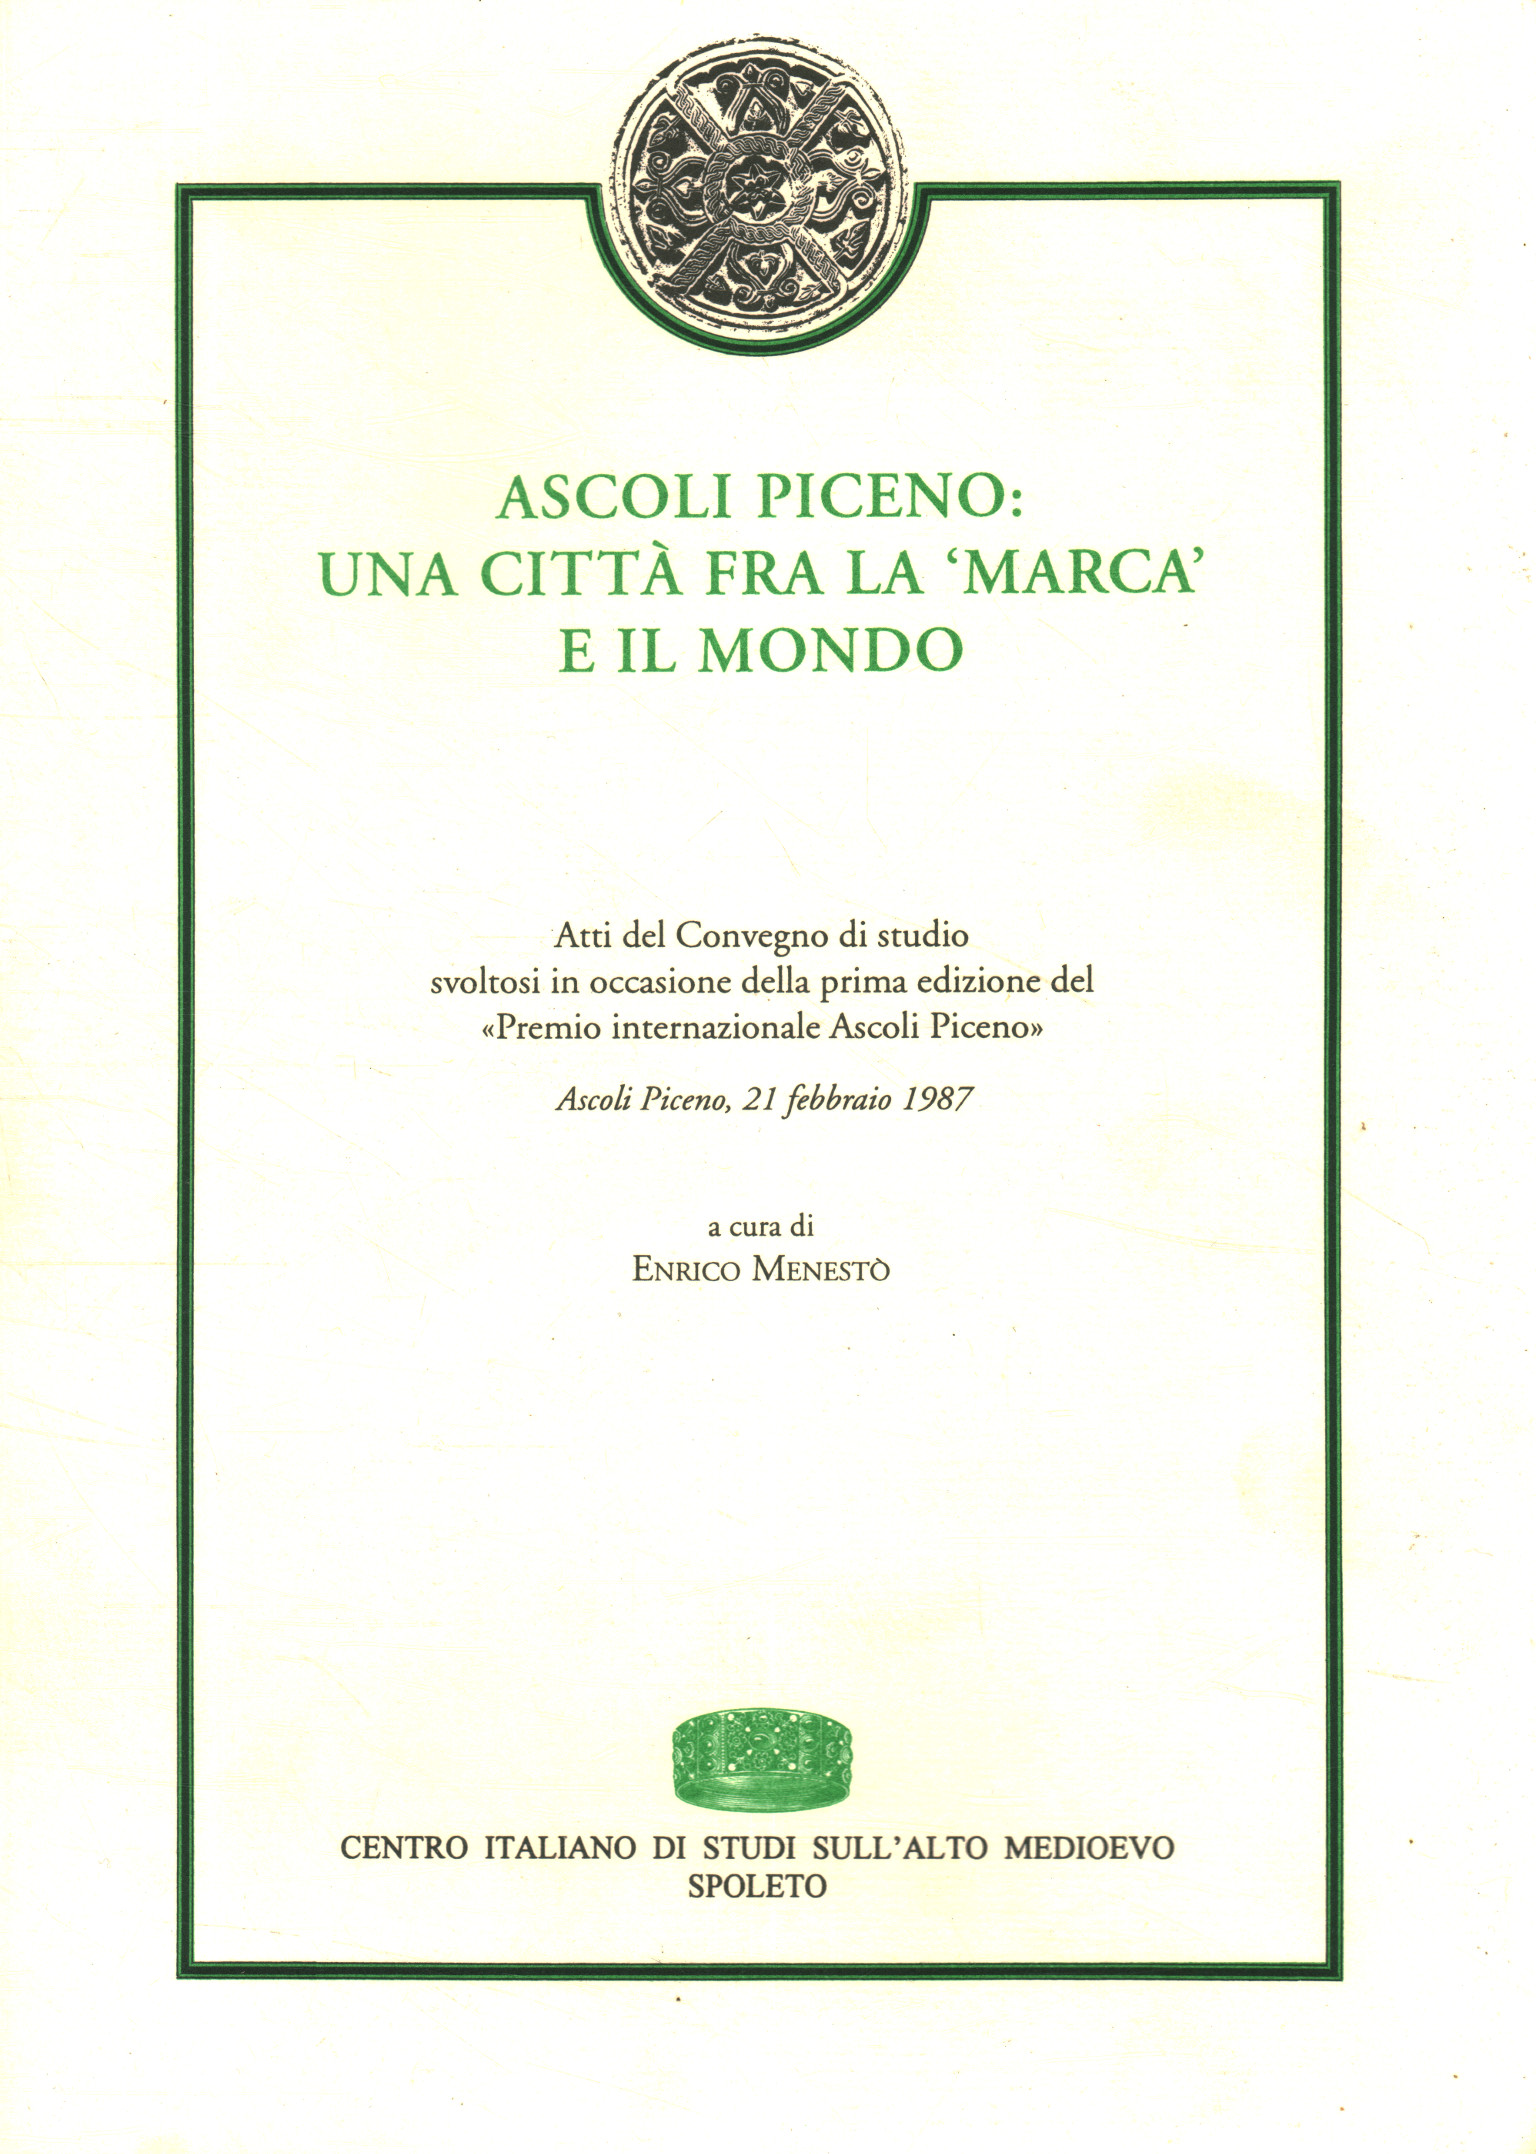 Ascoli Piceno: una città fra la marca e il mondo